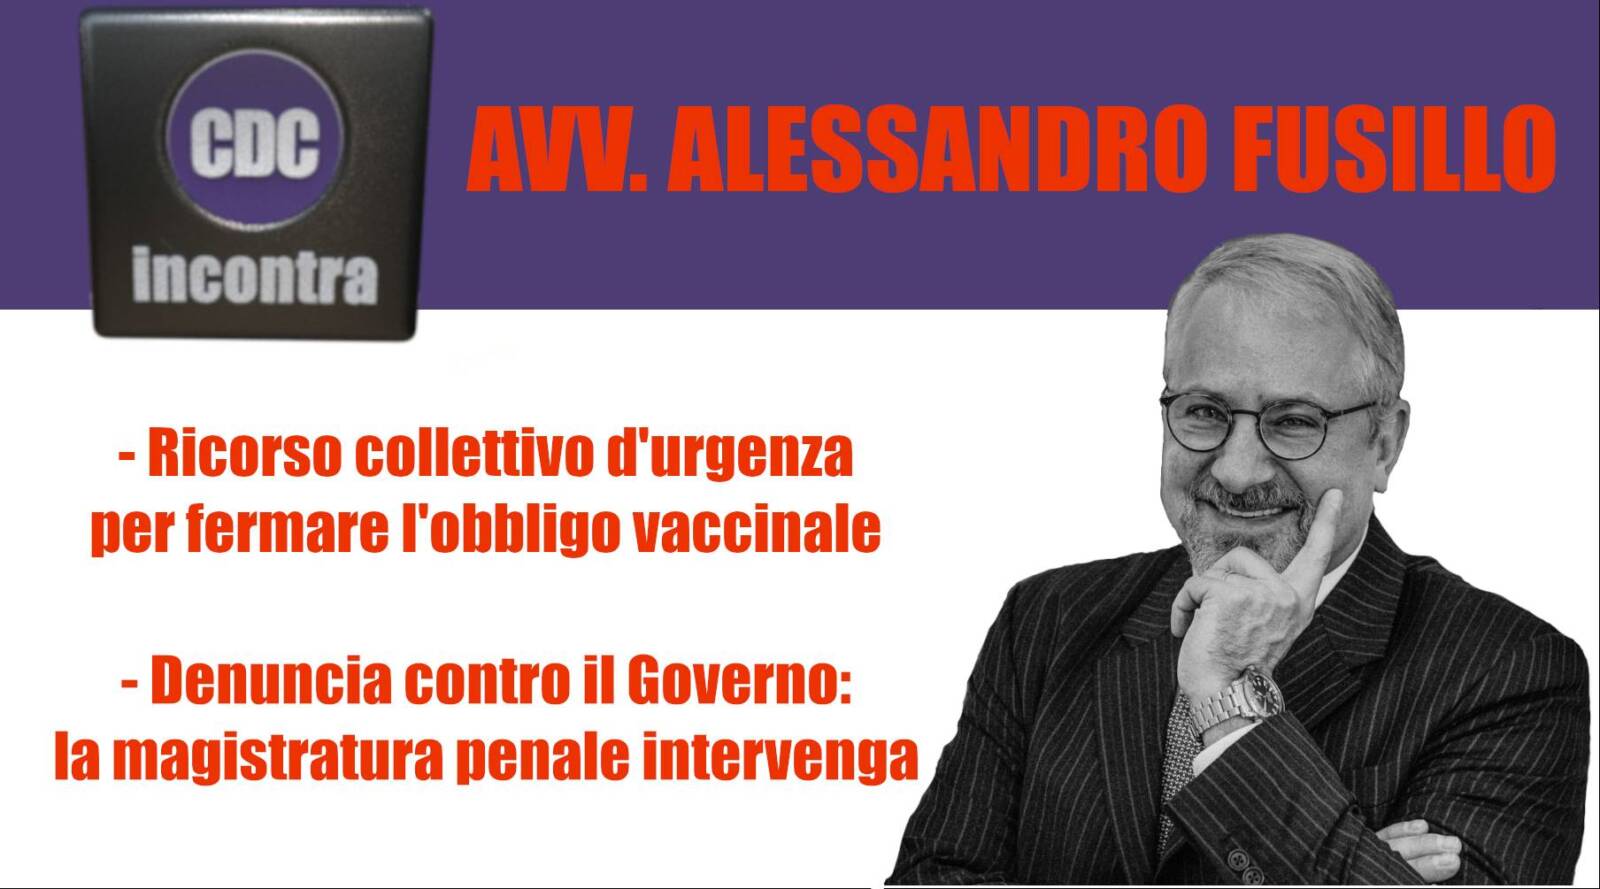 CDC Incontra – Avv. Alessandro Fusillo: Governo denunciato per Strage